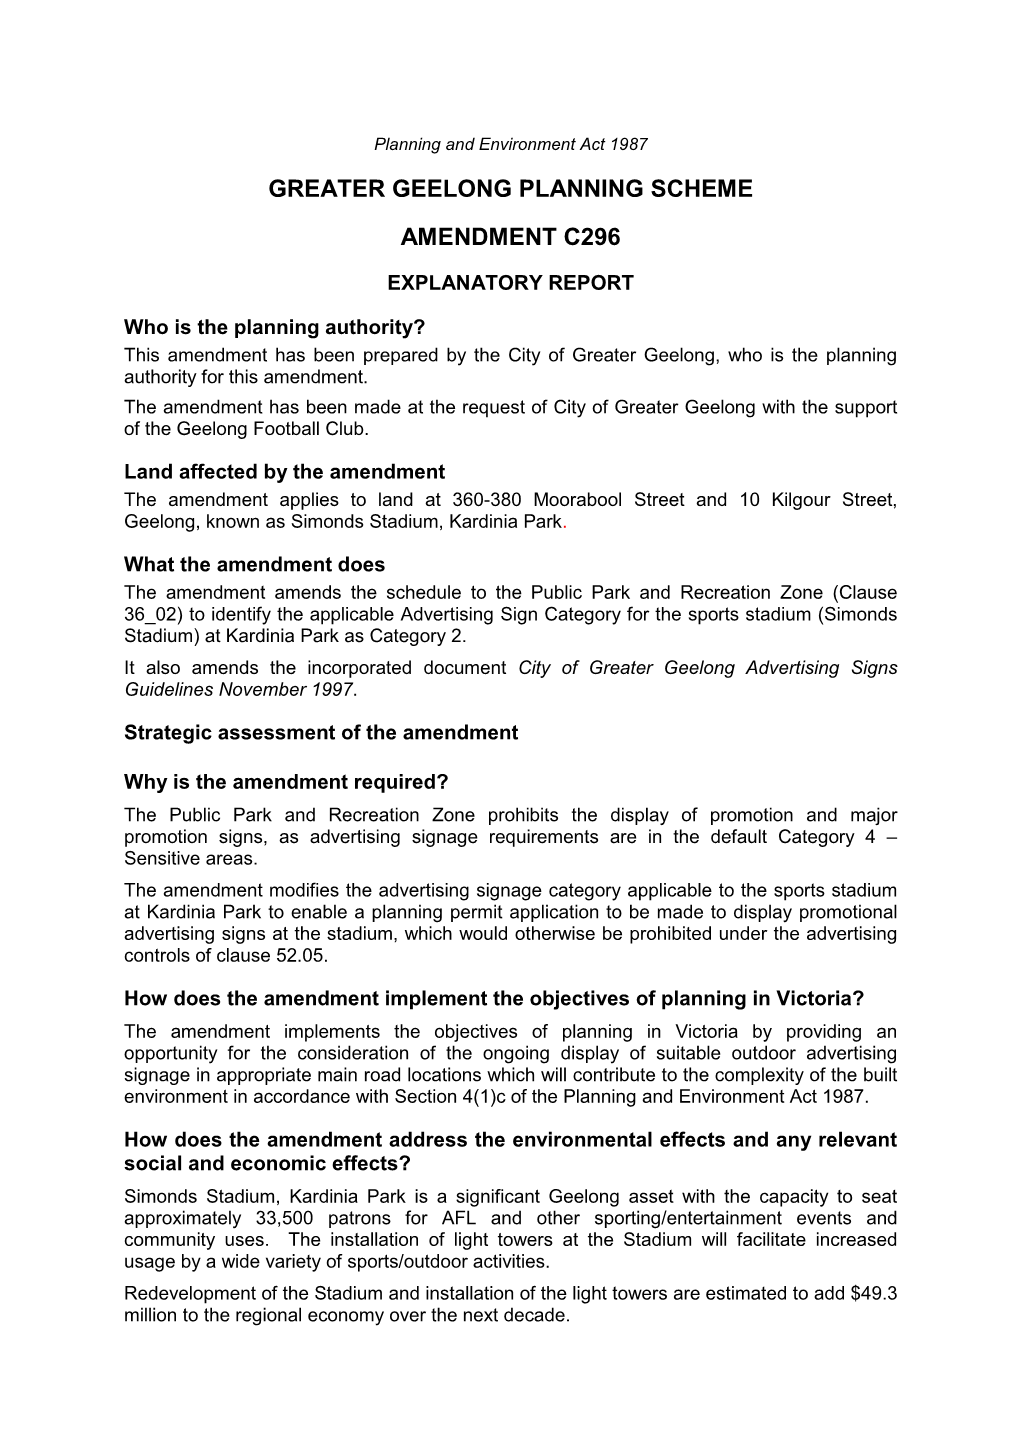 Greater Geelong Planning Scheme Amendment C296